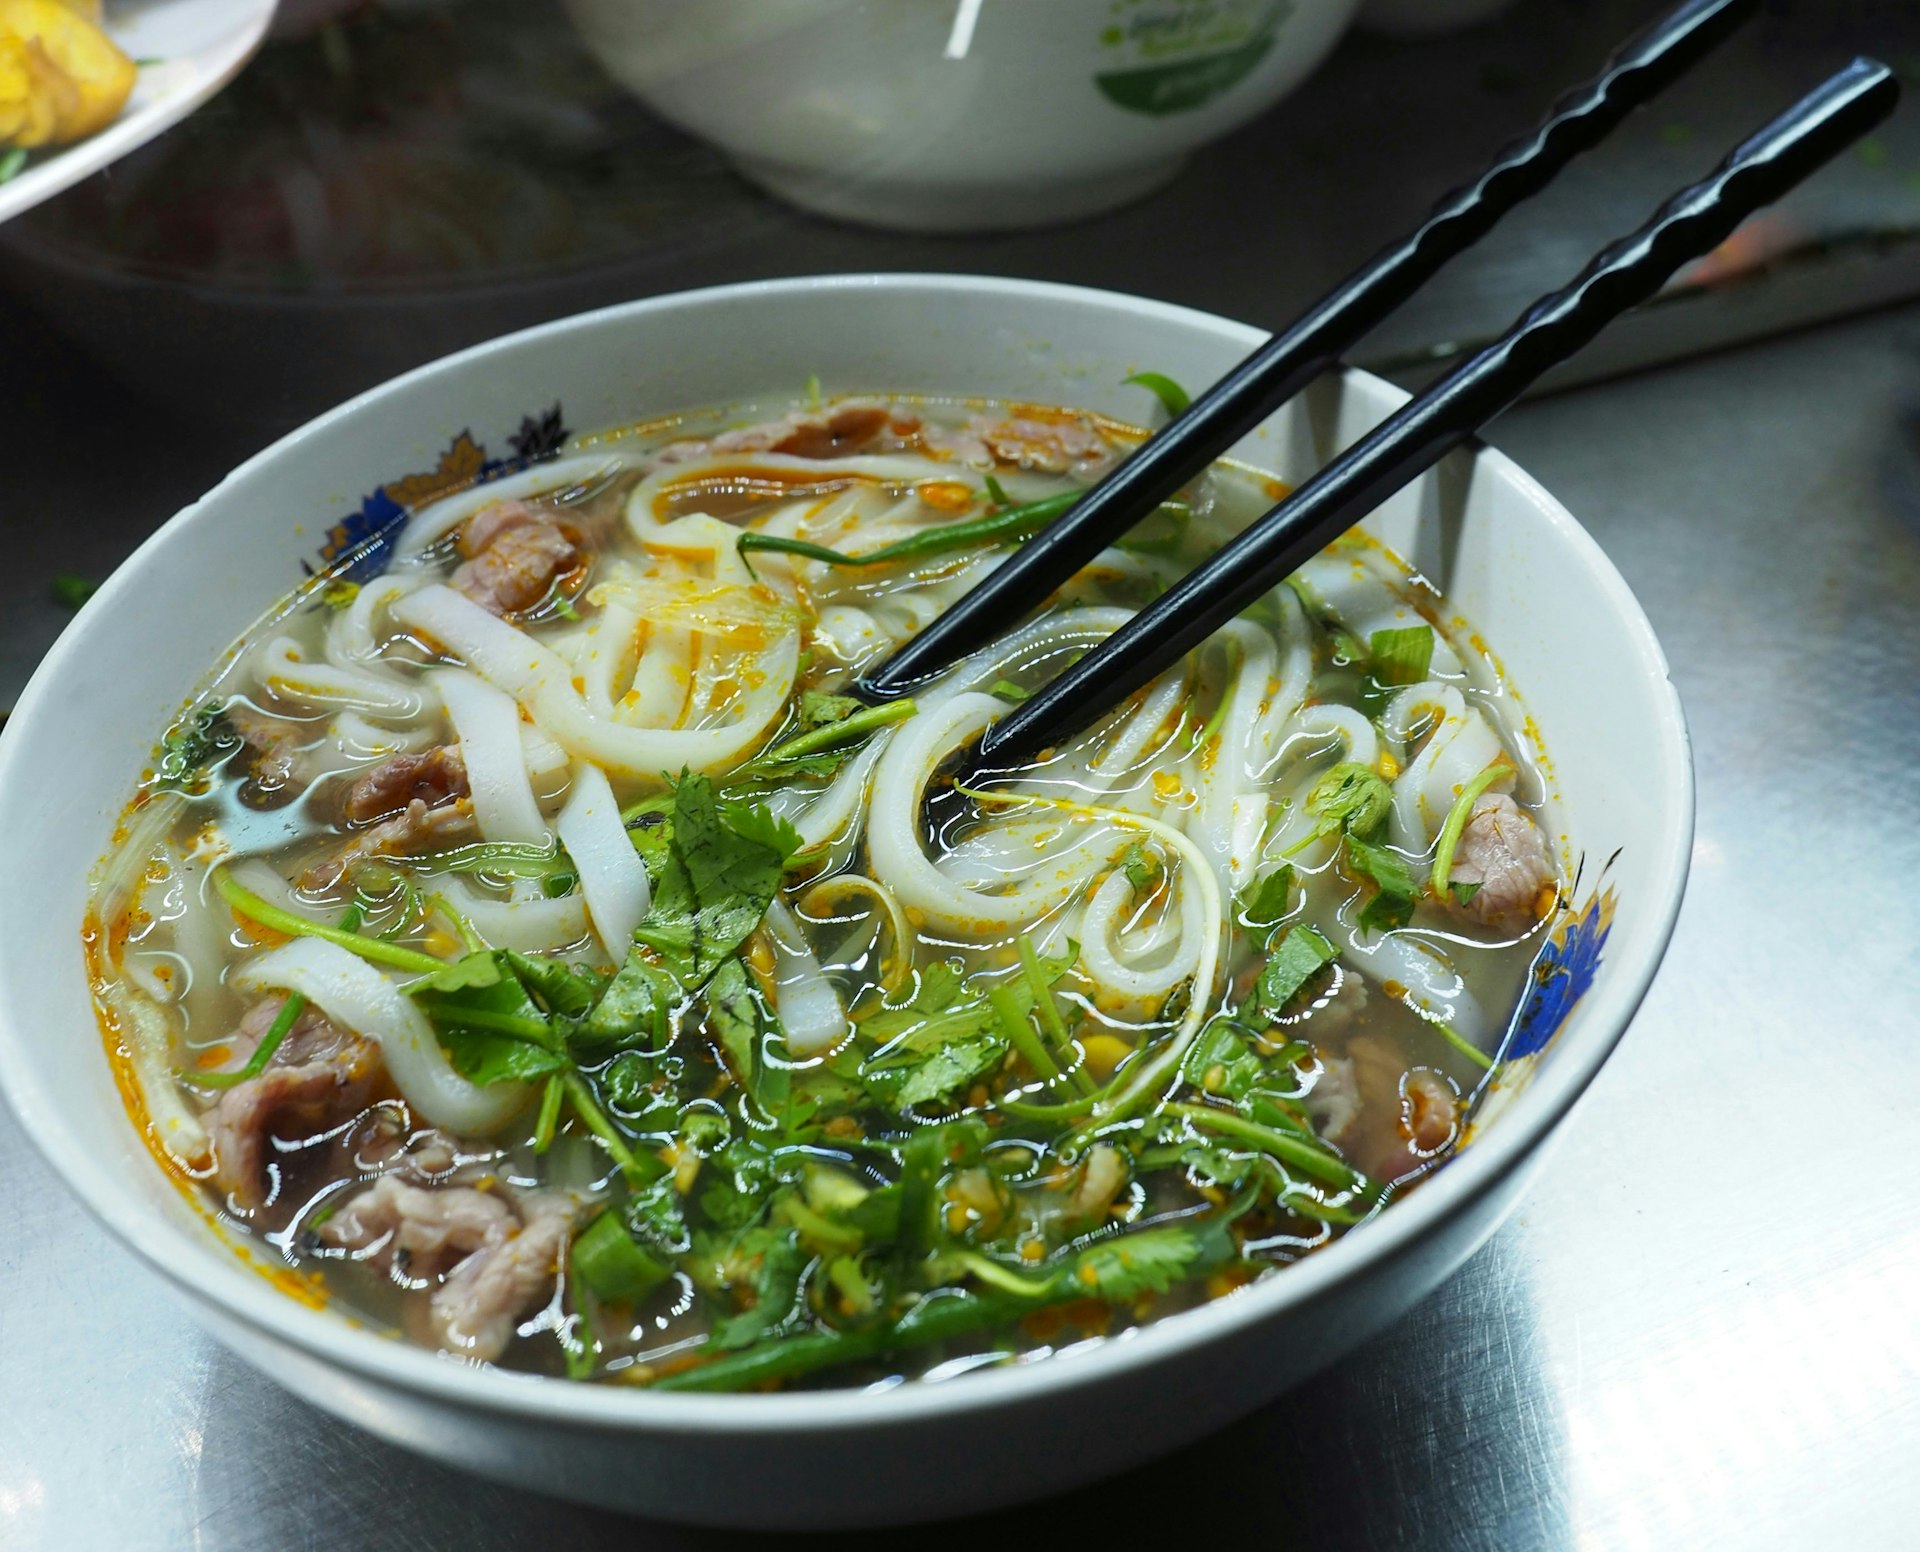 En sidovy av en skål med pho stod på en bordsskiva på en vietnamesisk restaurang.  Pho innehåller tjocka nudlar, grönsaker och kött, och har ett par ätpinnar vilande i den.